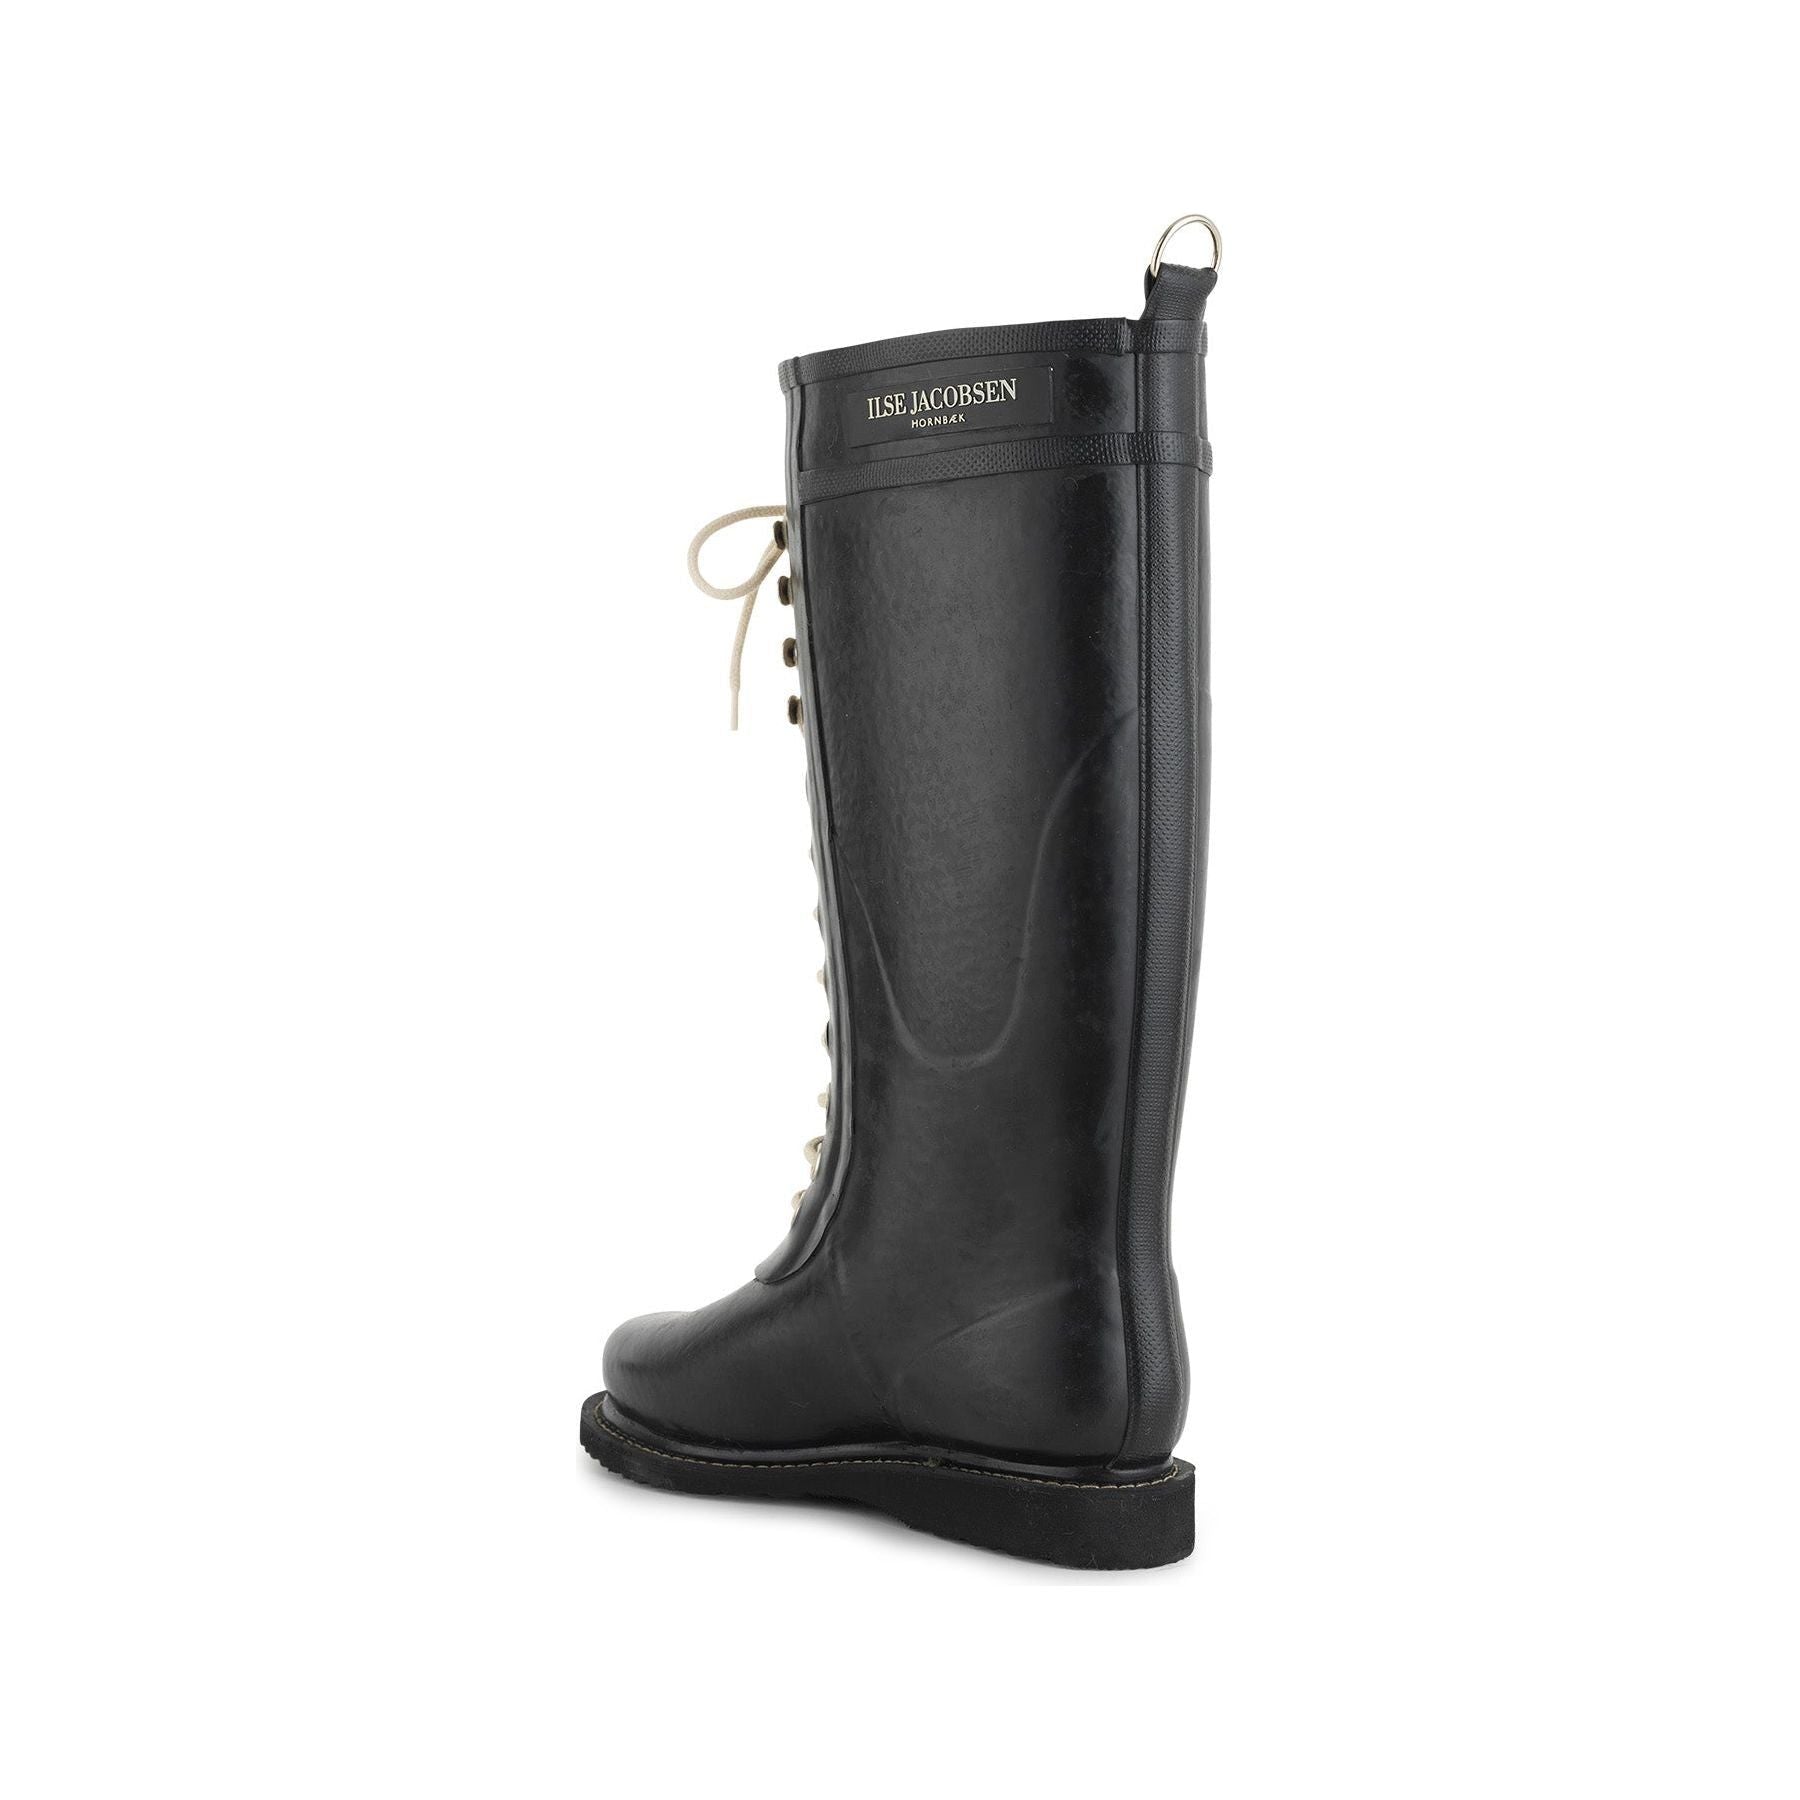 Ilse Jacobsen W Rain Boots Knee High Rubber Boot w/ Laces, Black